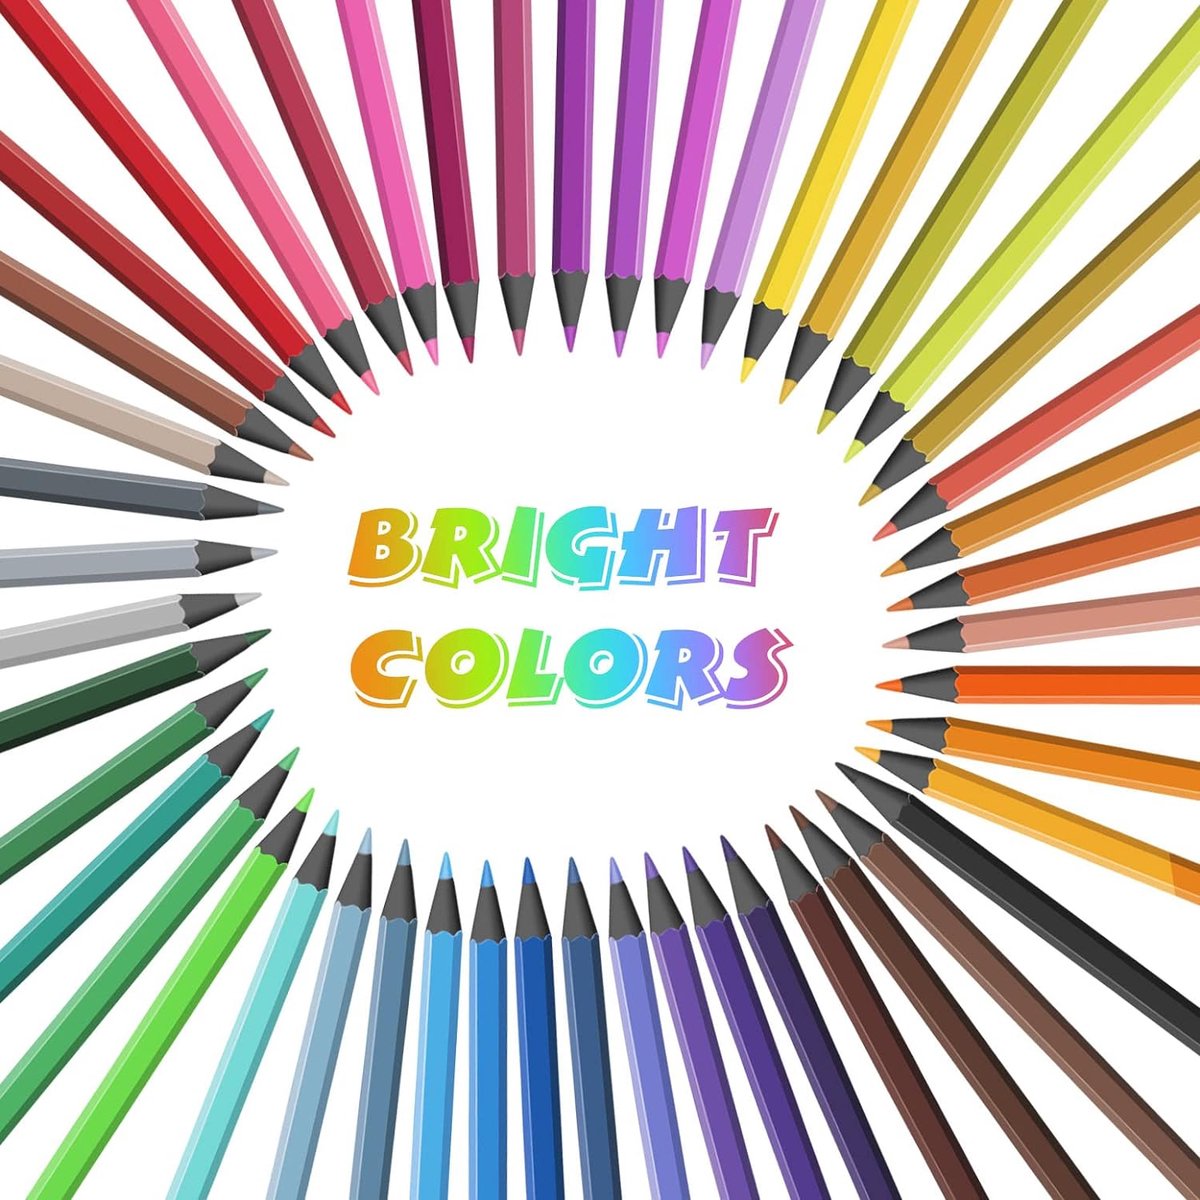 Kleurpotloden 48 professionele kleurpotloden voor volwassenen, kleurboek voor kinderen, kunstenaar schets kleurpotloden set voor tekenen kleuren